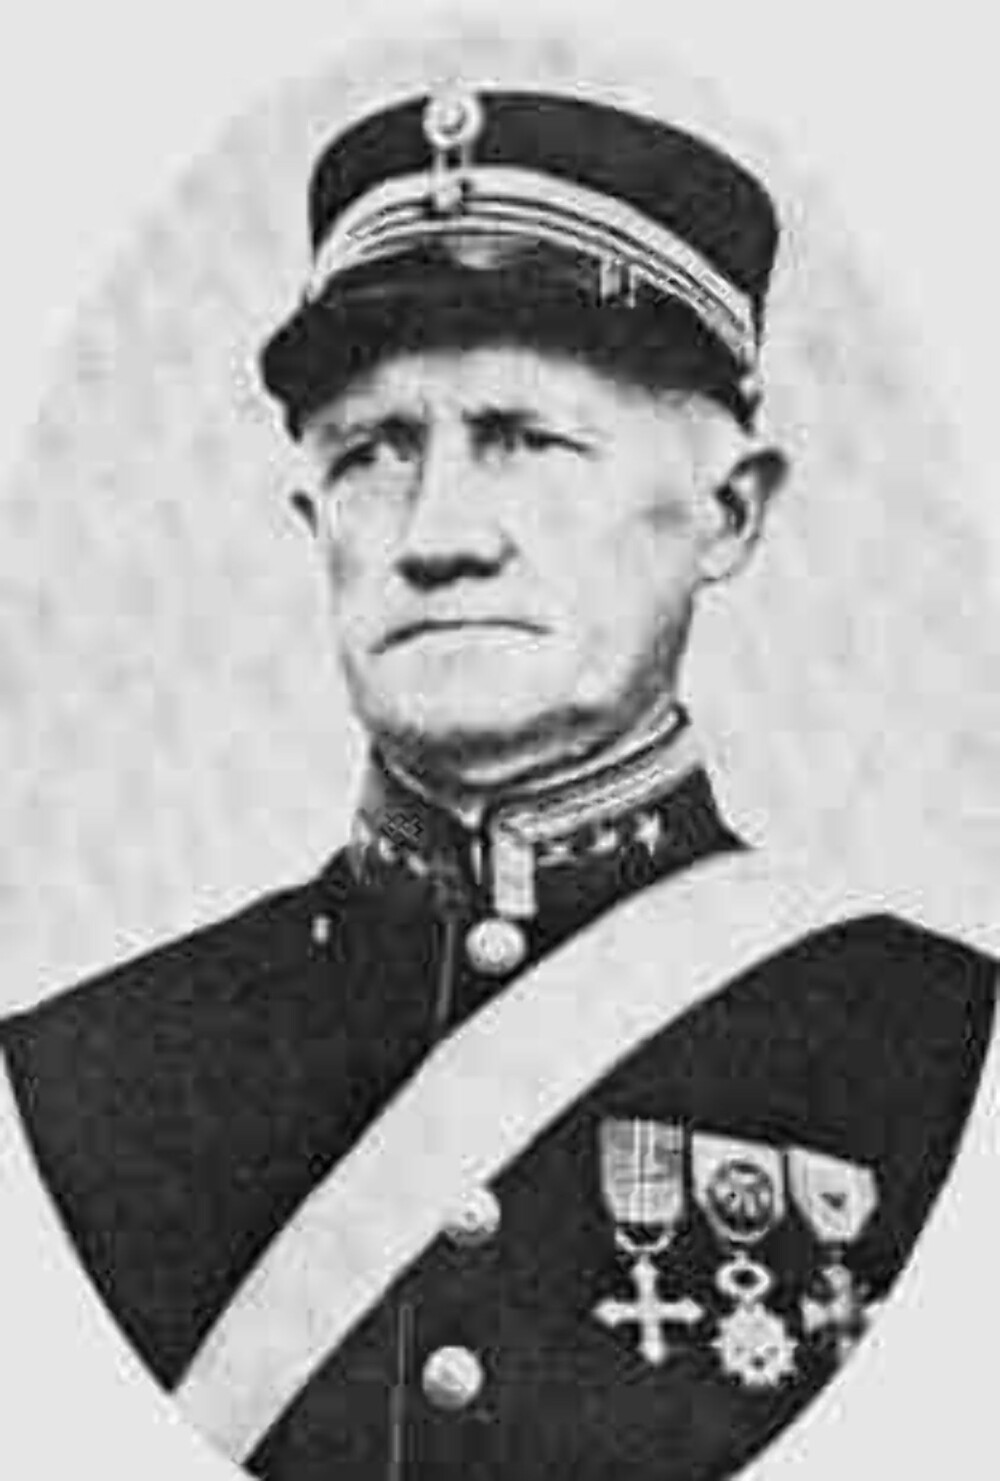 Oberst Birger K. Eriksen ga ordre om ild mot Blücher og forsinket okkupasjo-nen av Oslo med nærmere ett døgn. Han skaffet dermed Kongen, Regjeringen og Stor-tinget det nødvendige tidsvinduet til å forlate Oslo. Men han ga opp motstanden etter det.